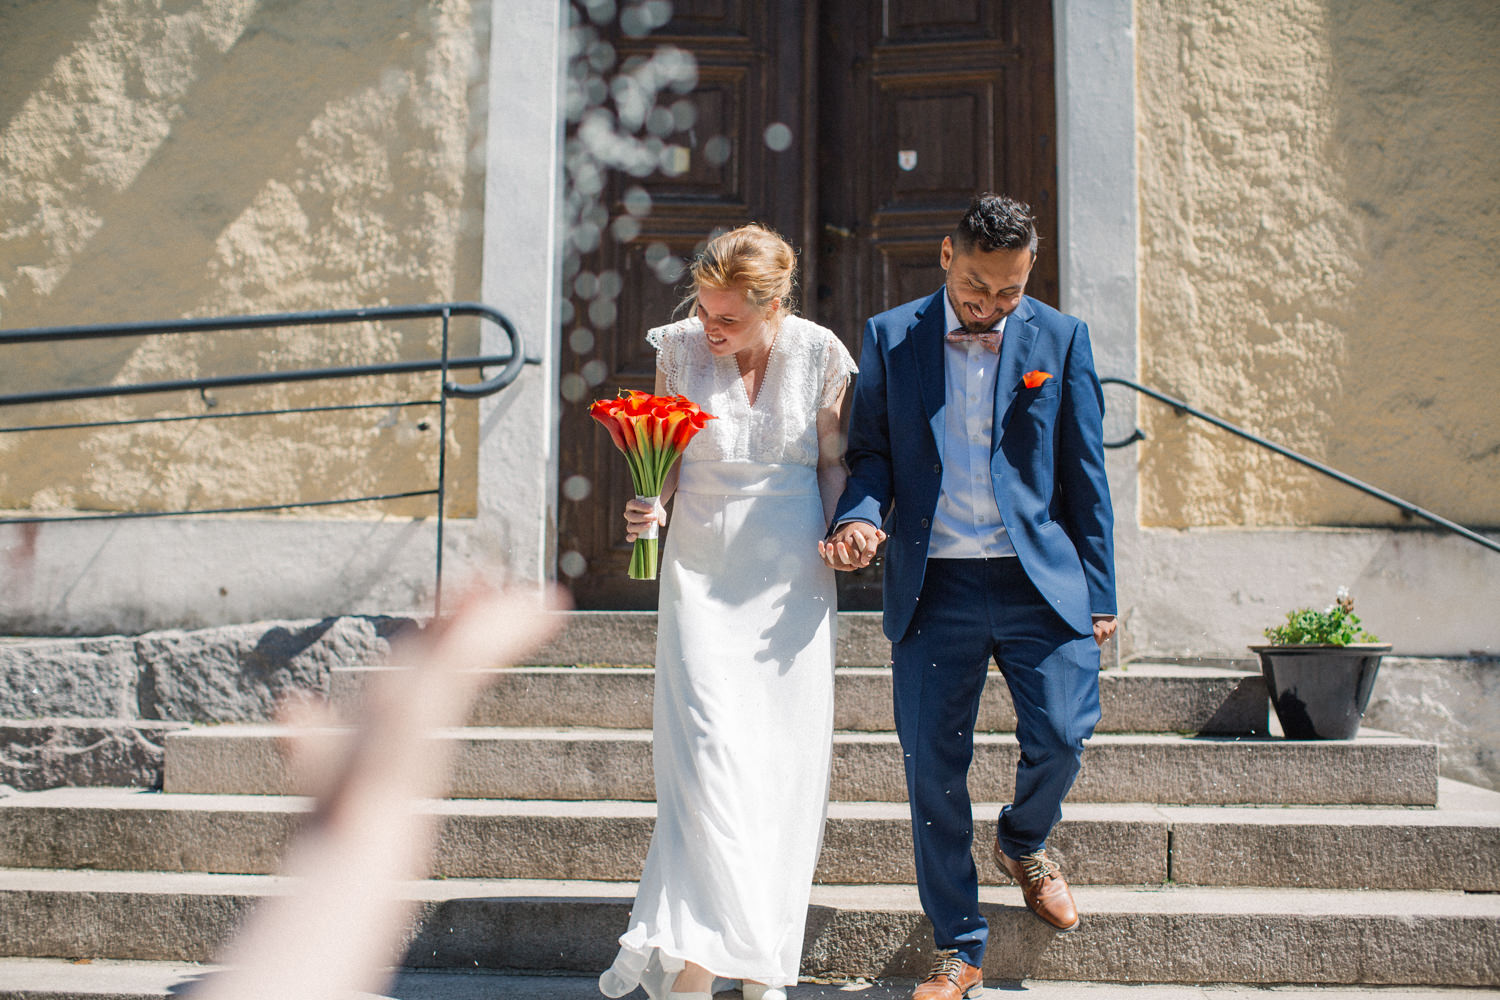 Vigsel i Sankta Maria kyrka, Borrby, brudparet kommer ut på trappan och ris kastas. Fotograf: Tove Lundquist.